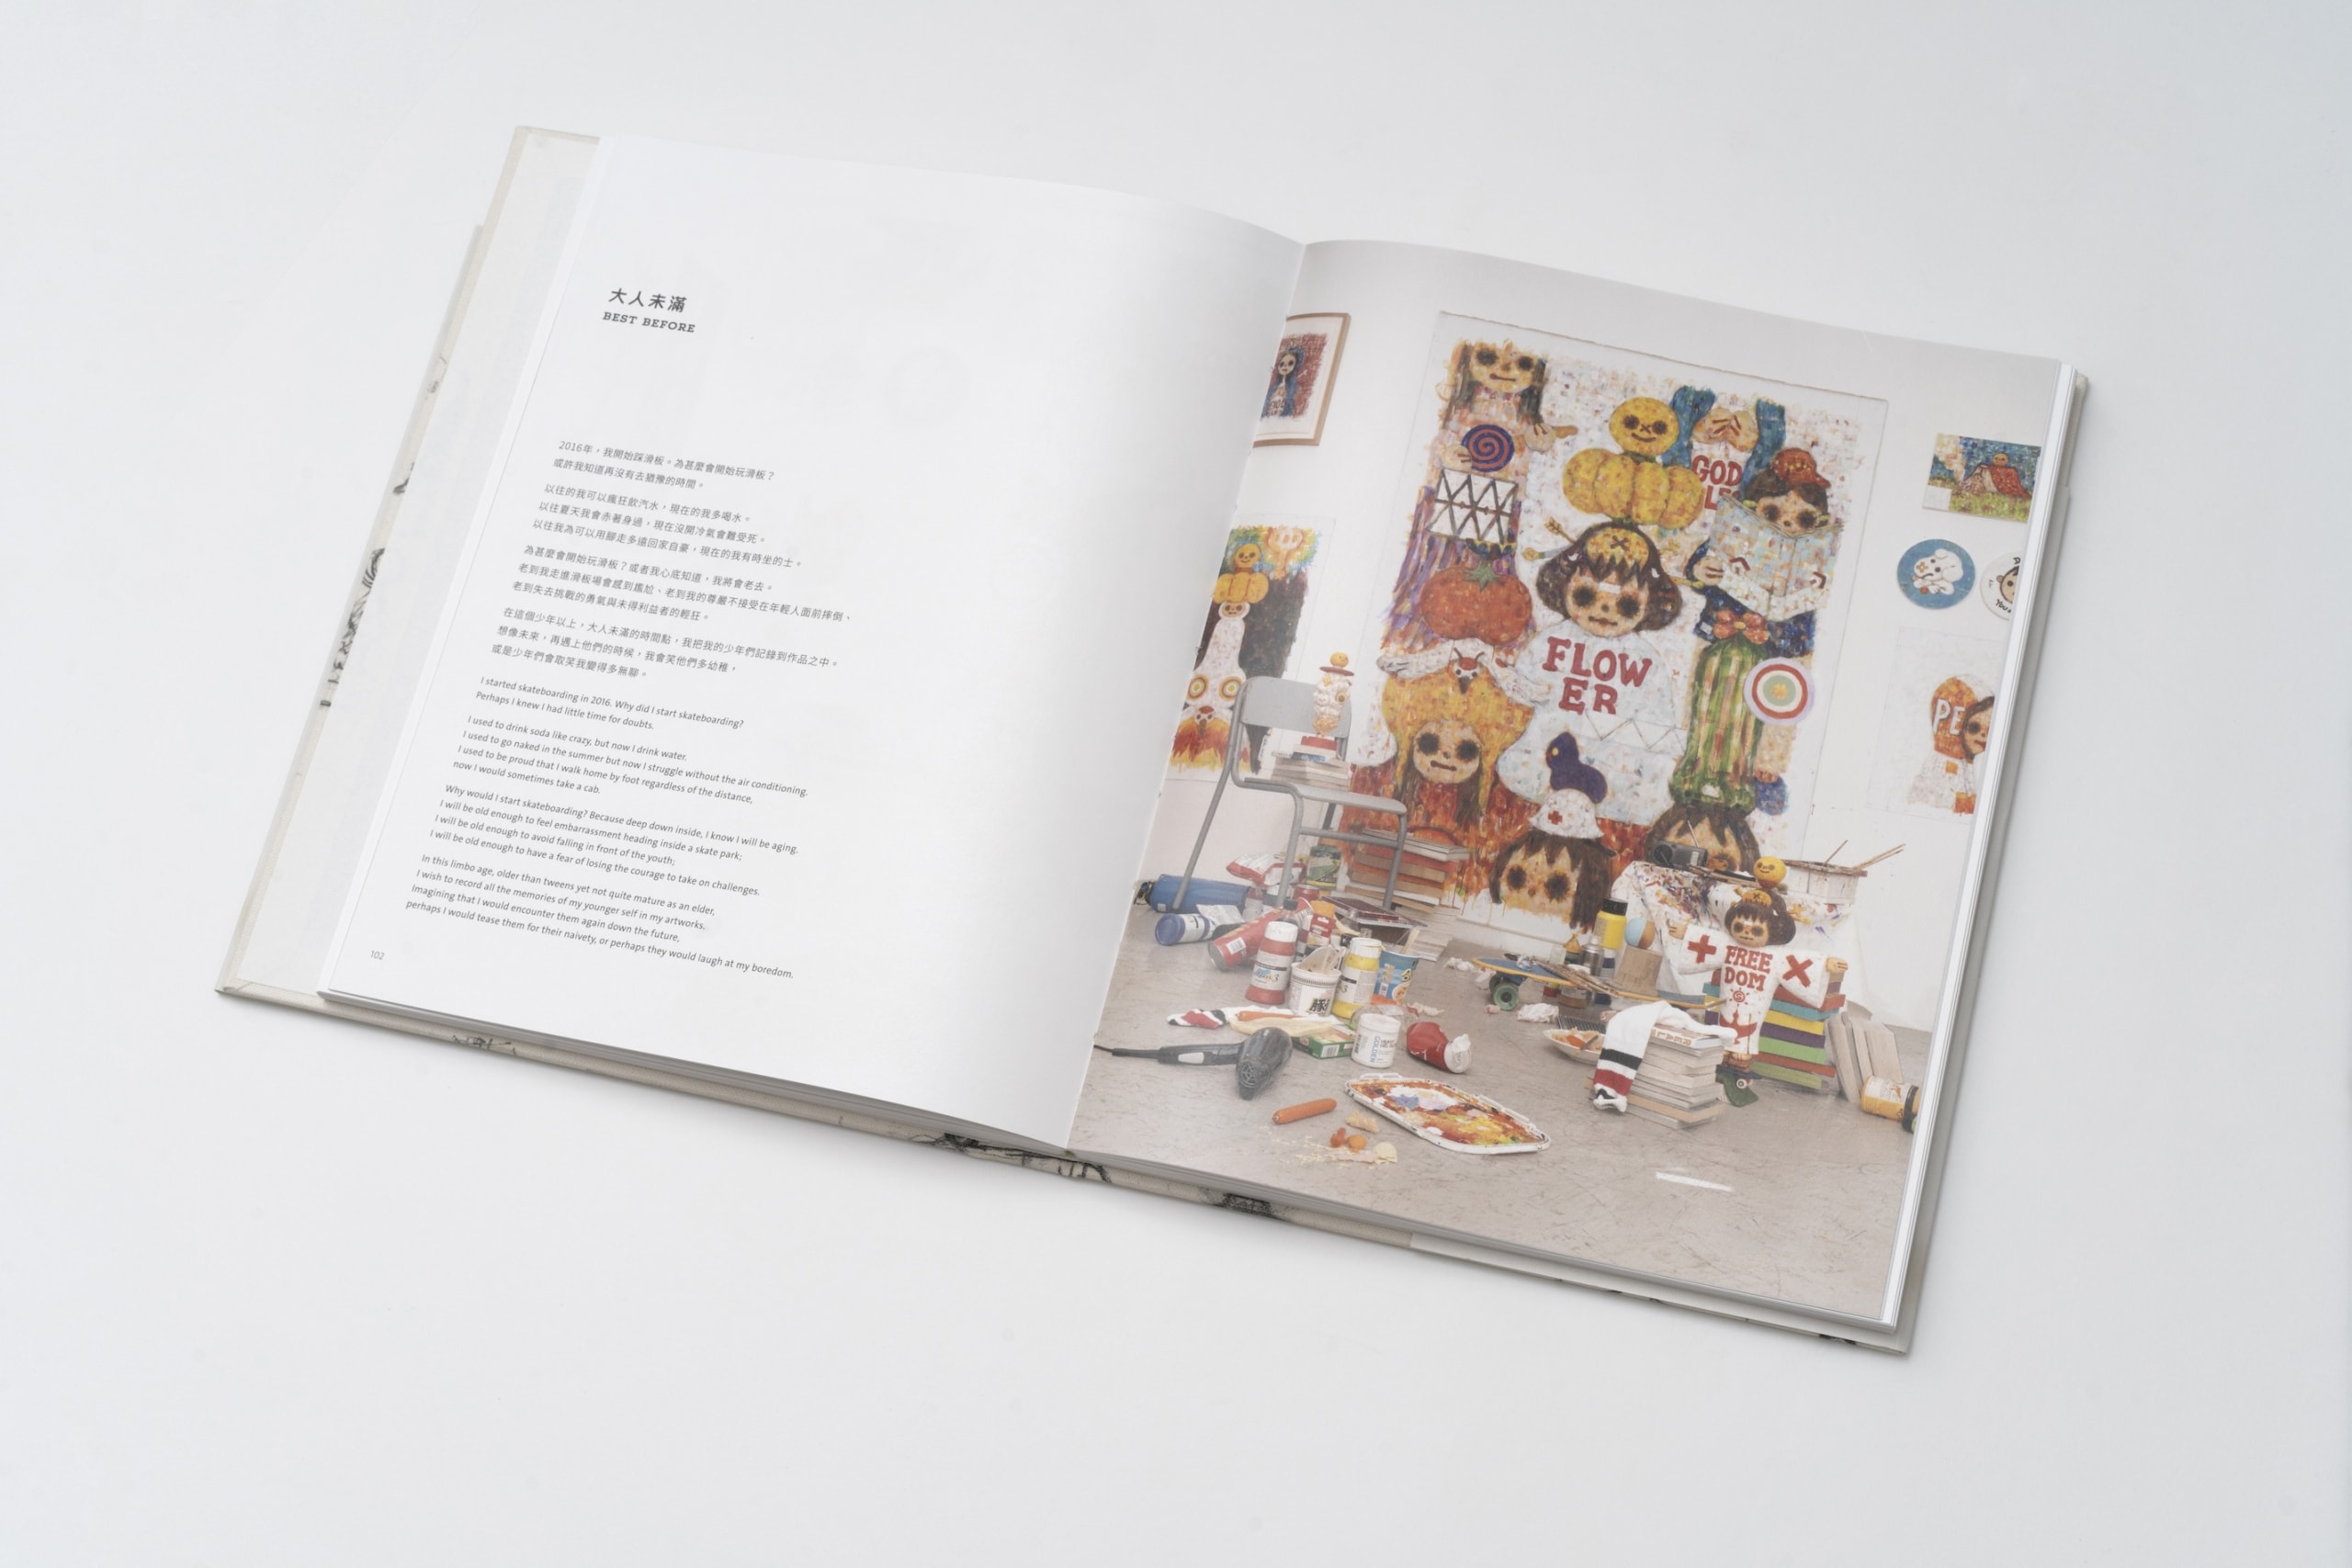 香港藝術家 Kila Cheung 章柱基正式推出首本個人作品集《Rambler》